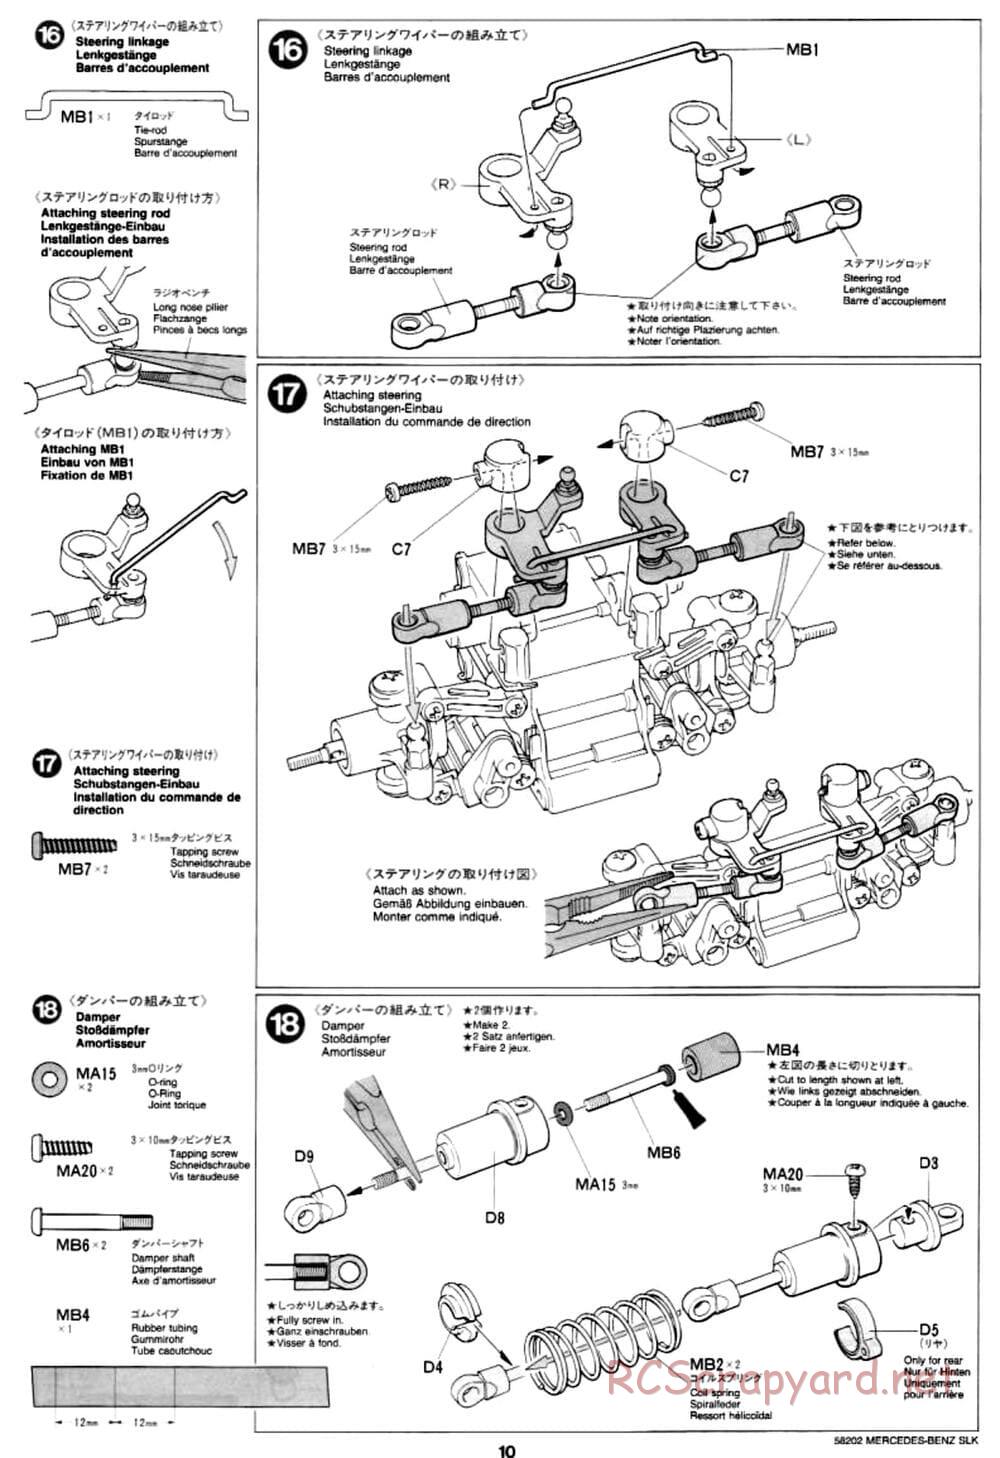 Tamiya - Mercedes-Benz SLK - M02L Chassis - Manual - Page 10